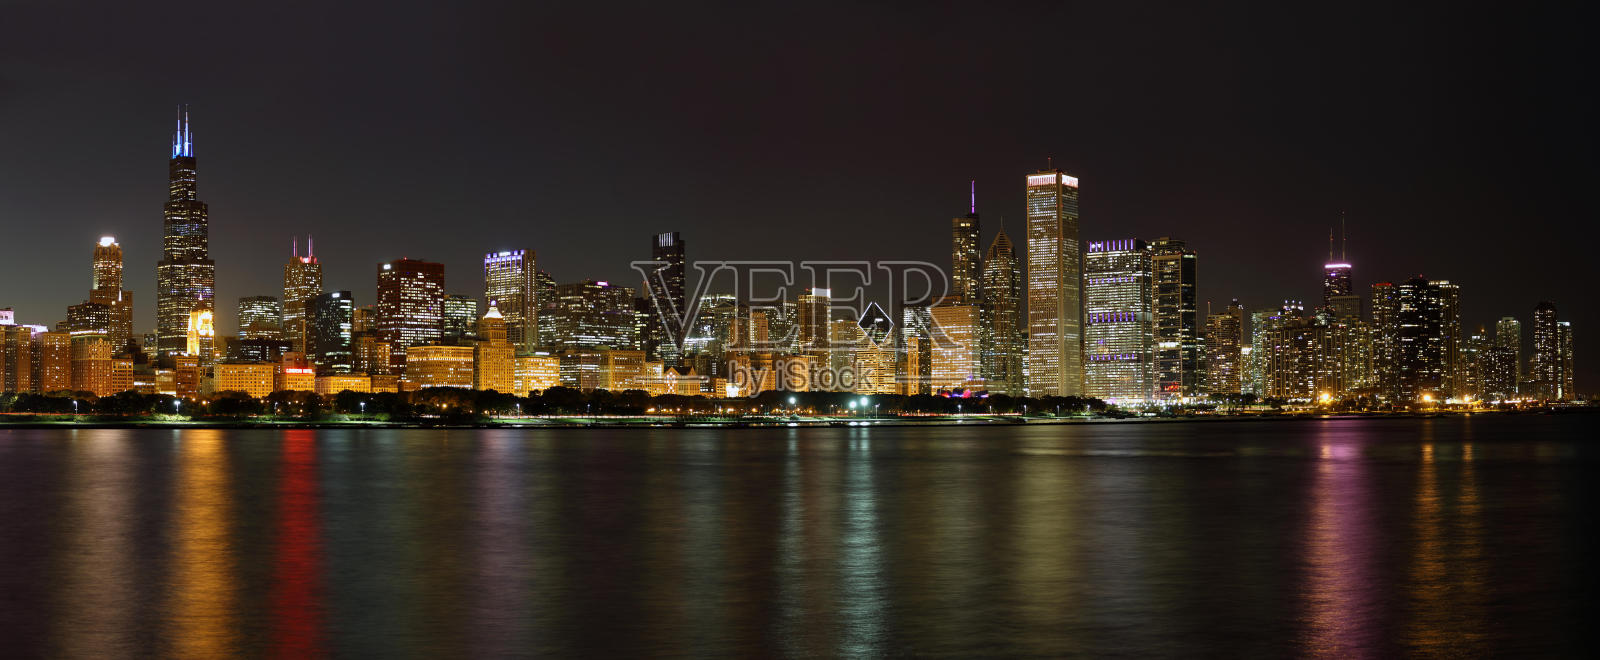 芝加哥夜景照片摄影图片